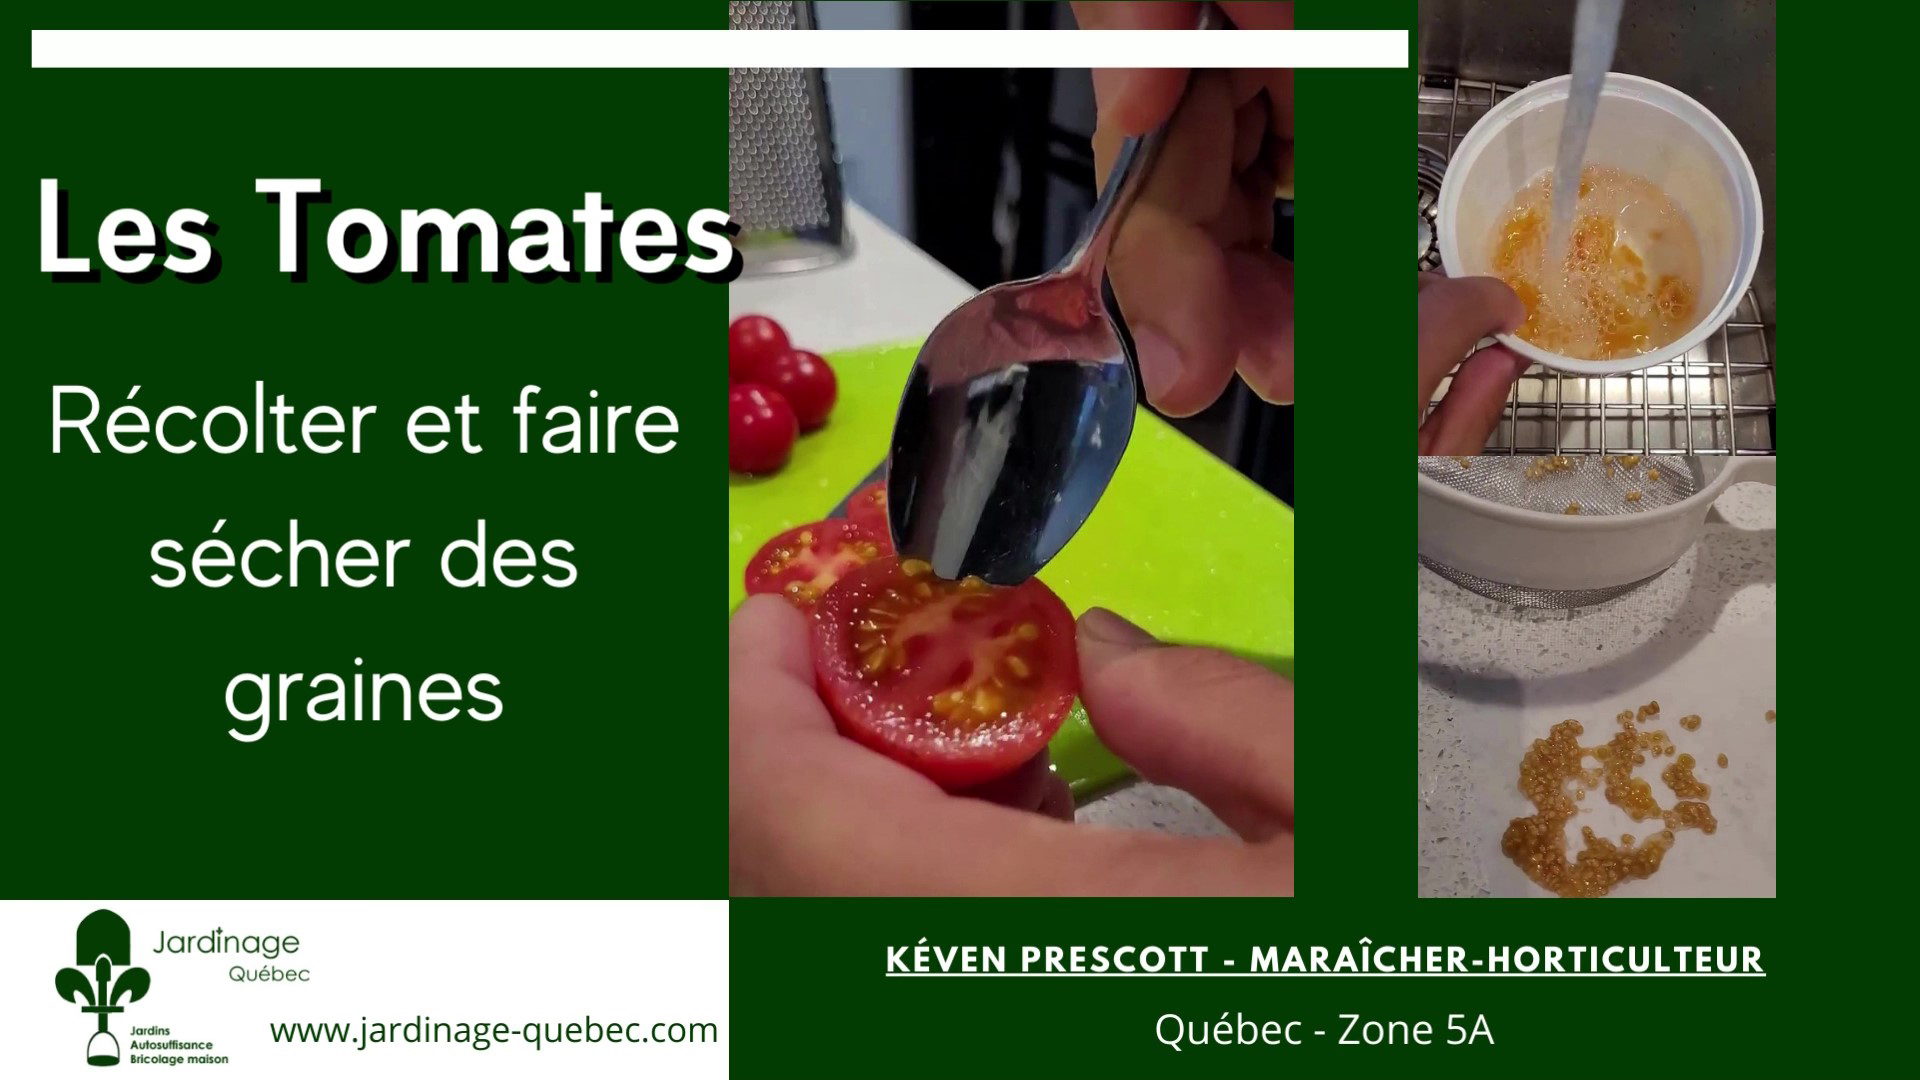 https://www.jardinage-quebec.com/videos/recolter-et-faire-secher-les-graines-de-tomates/recolter-et-faire-secher-graines-tomates.jpg